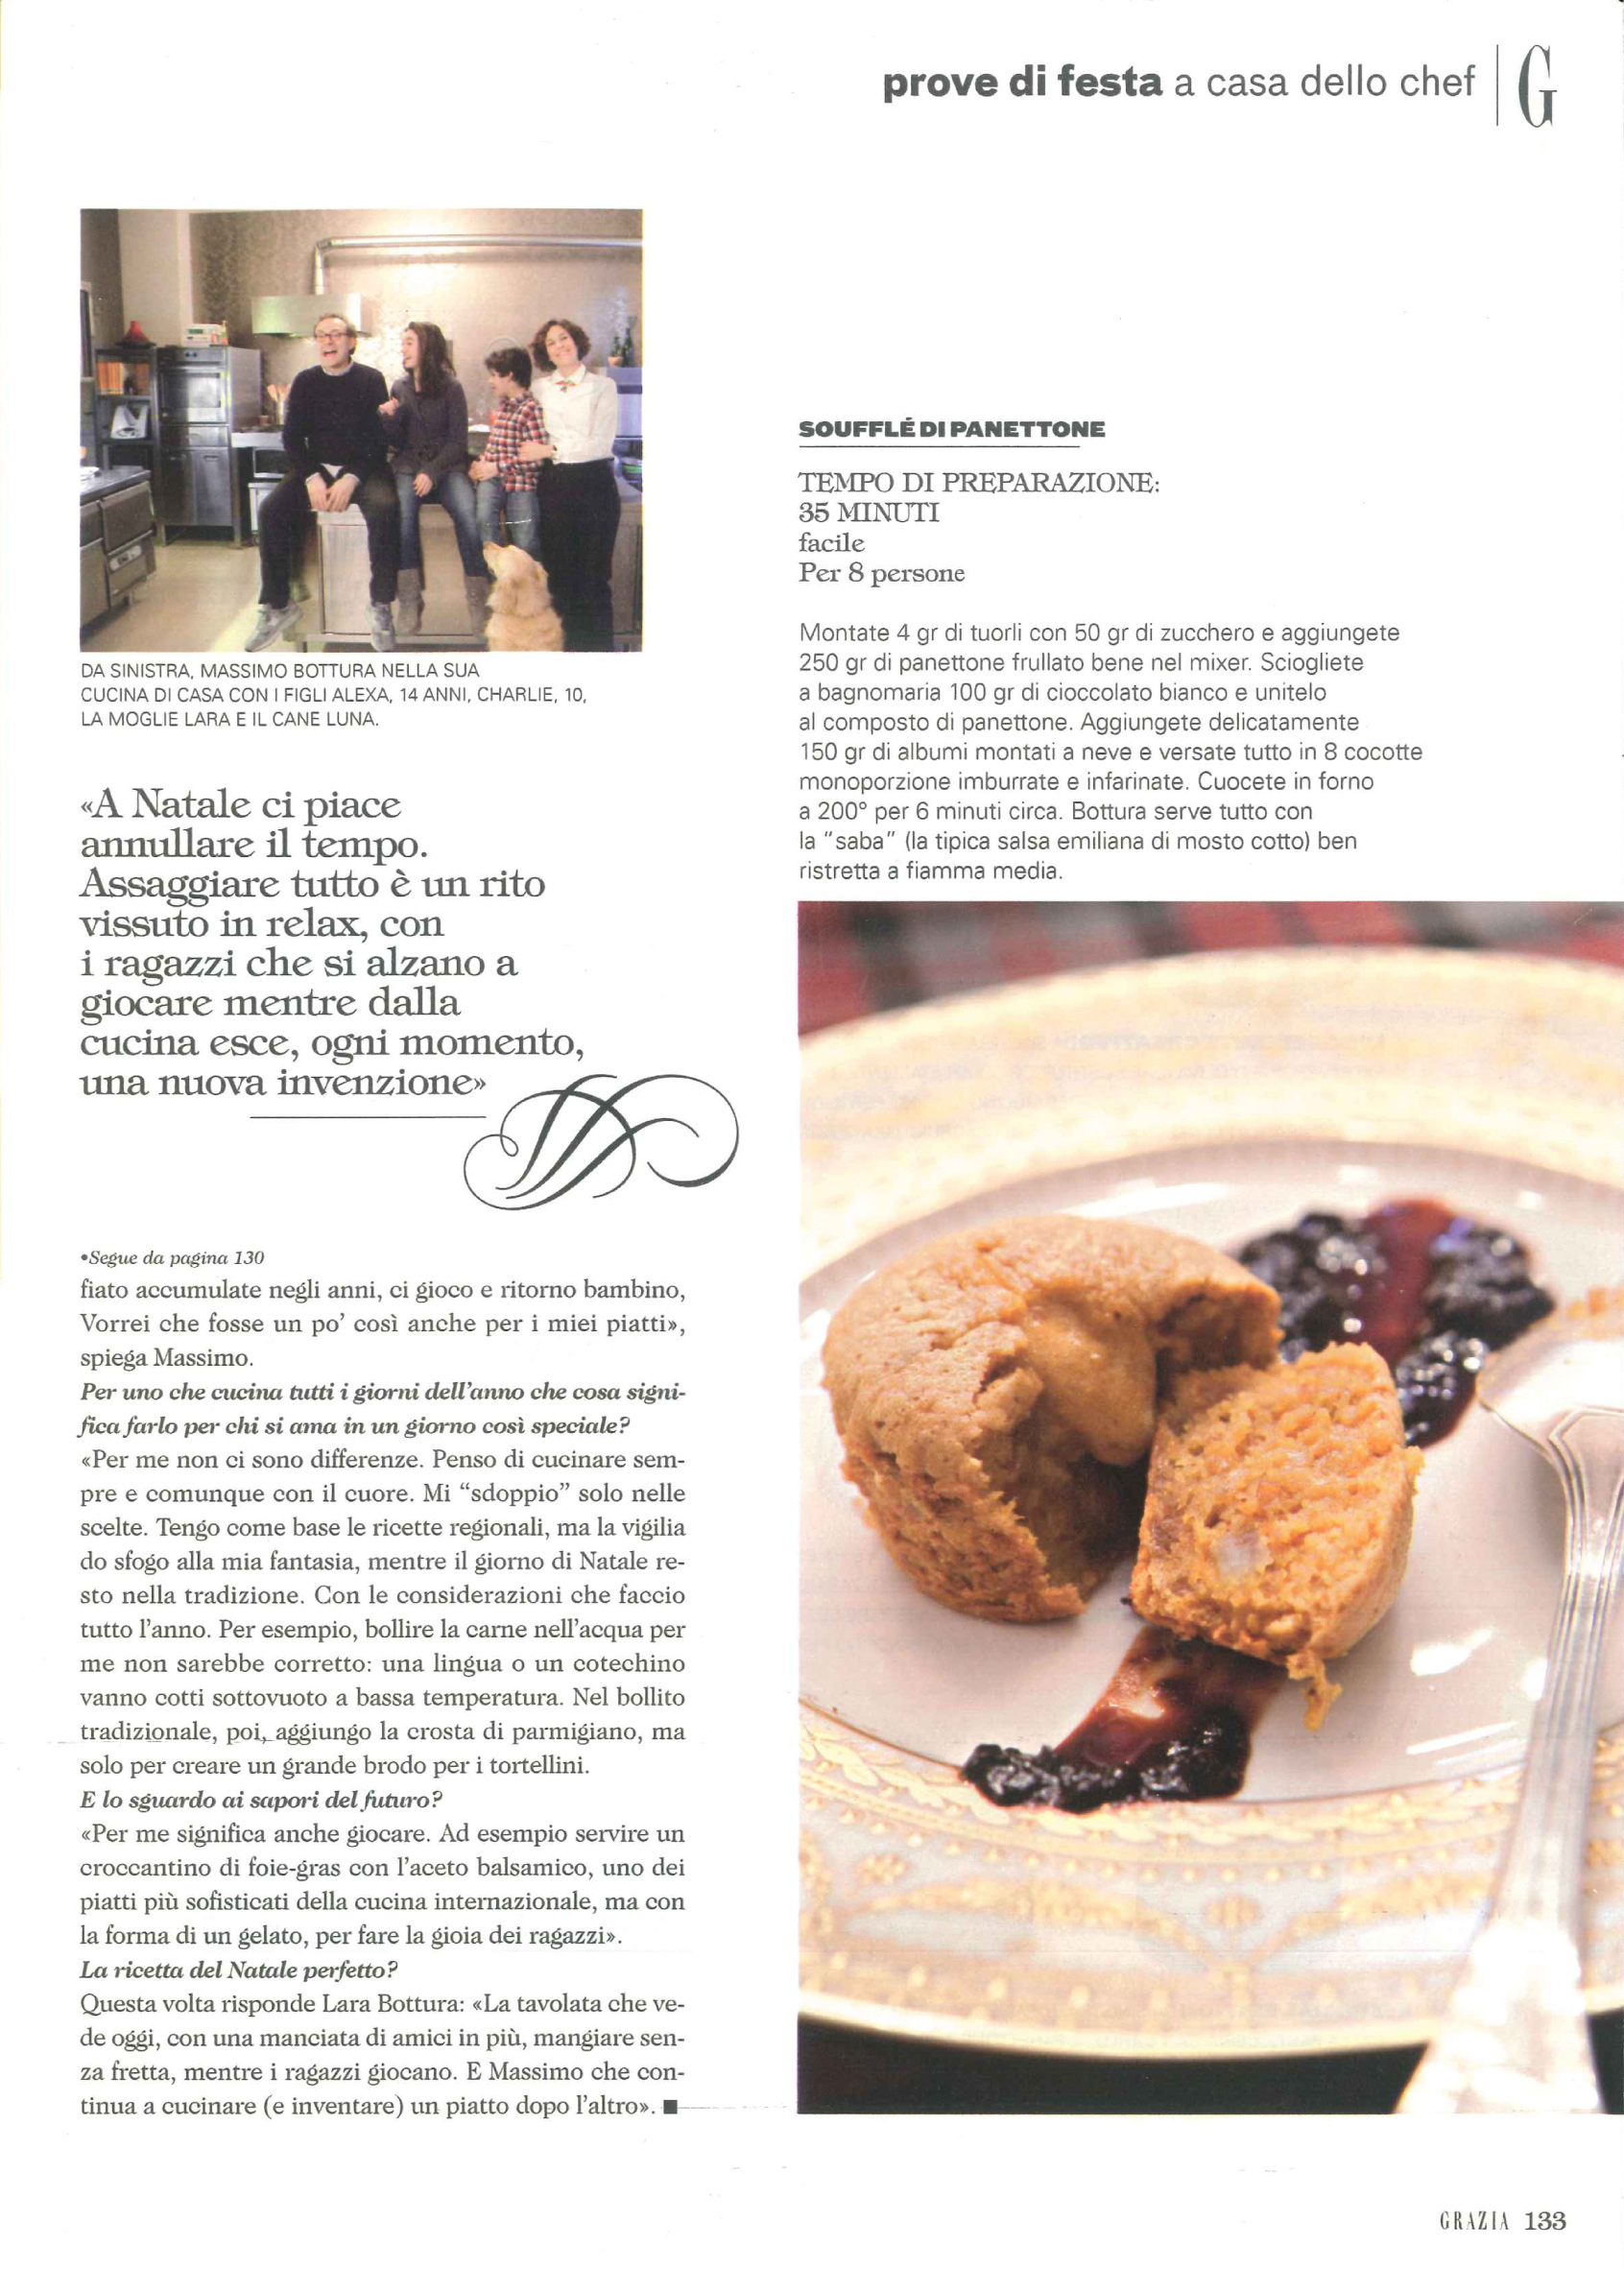 dal mio servizio di cucina a casa di Massimo Bottura pubblicato sul numero di Natale di Grazia nel 2010